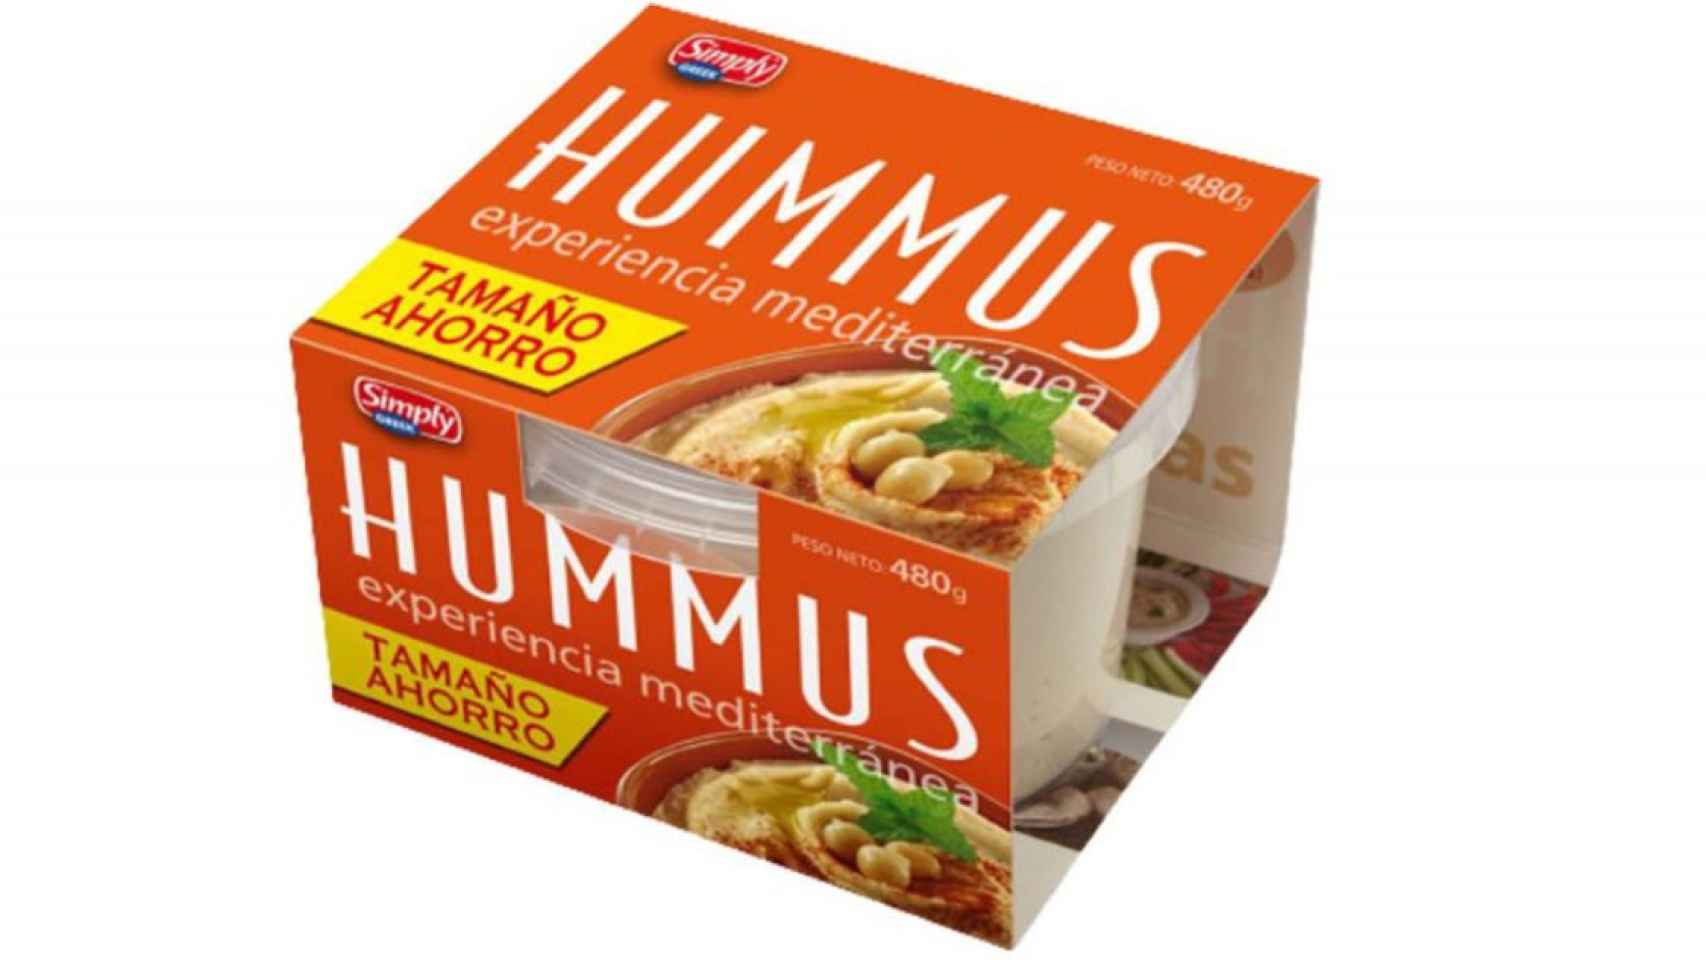 Hummus chickpeas.